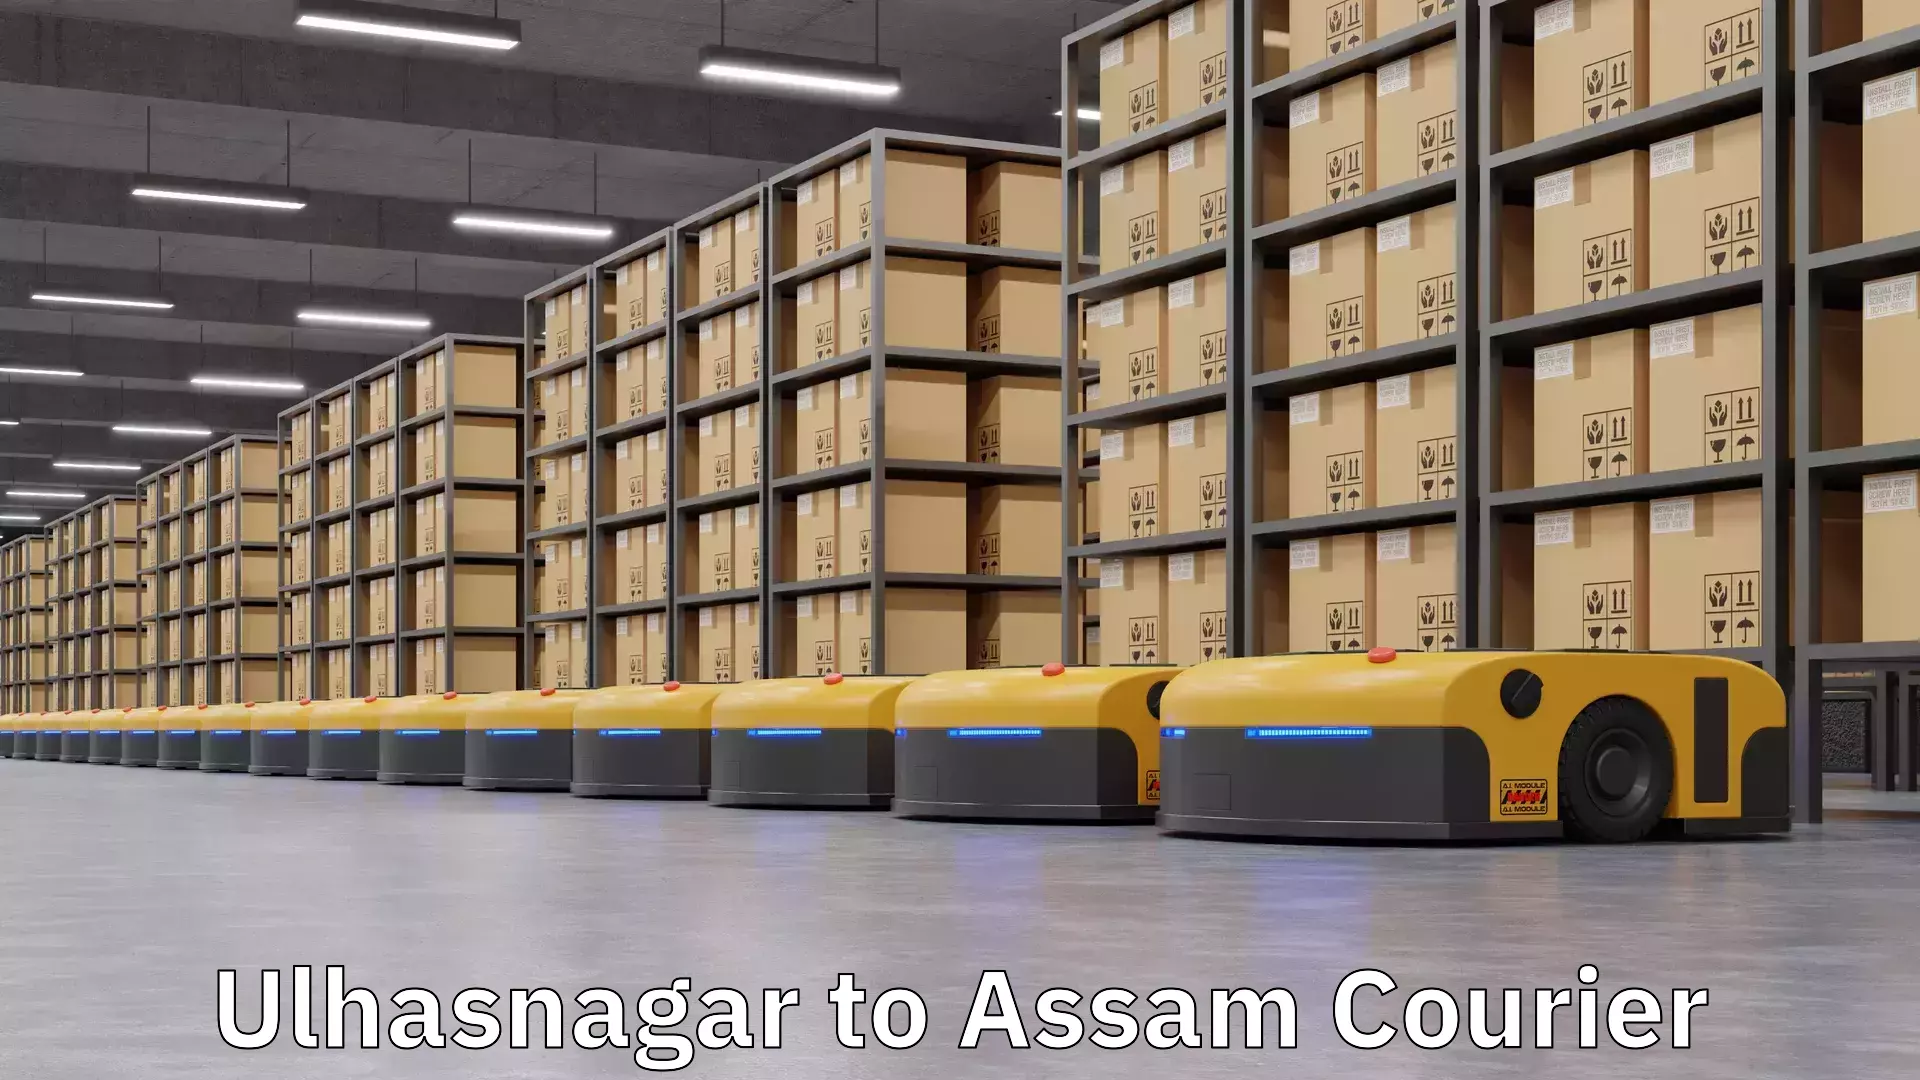 Courier service innovation Ulhasnagar to Assam